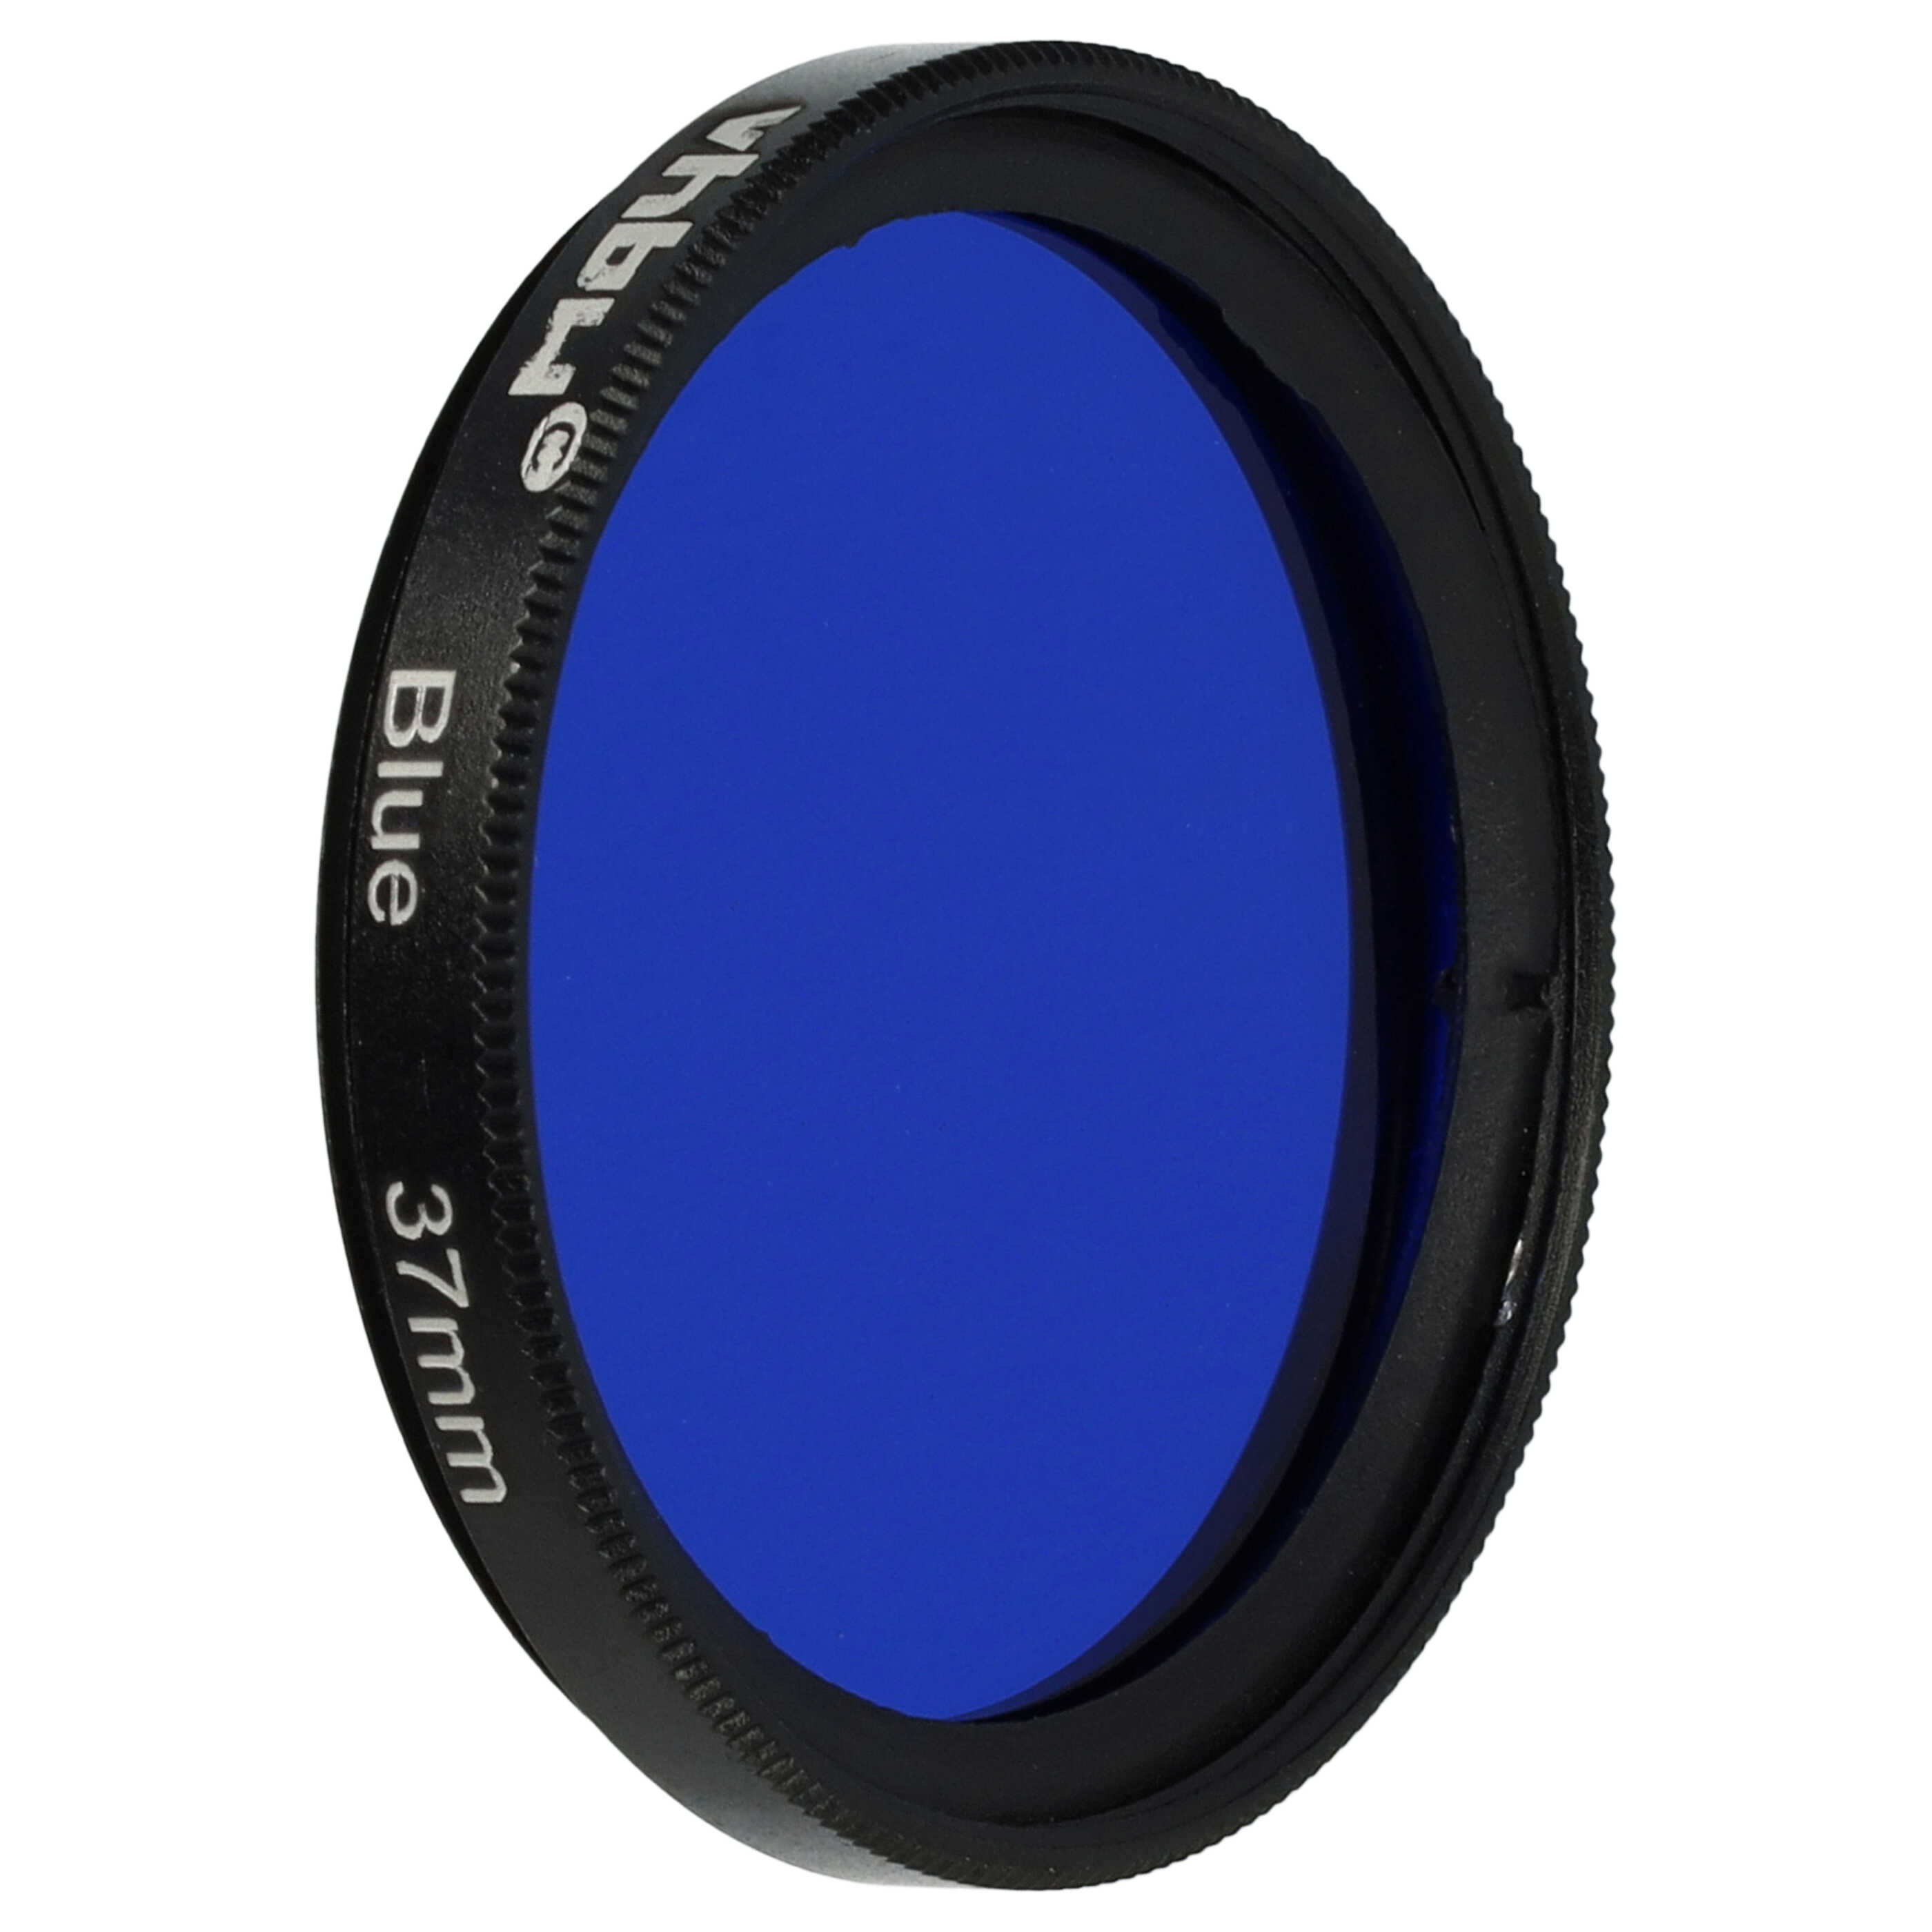 Filtro de color para objetivo de cámara con rosca de filtro de 37 mm - Filtro azul